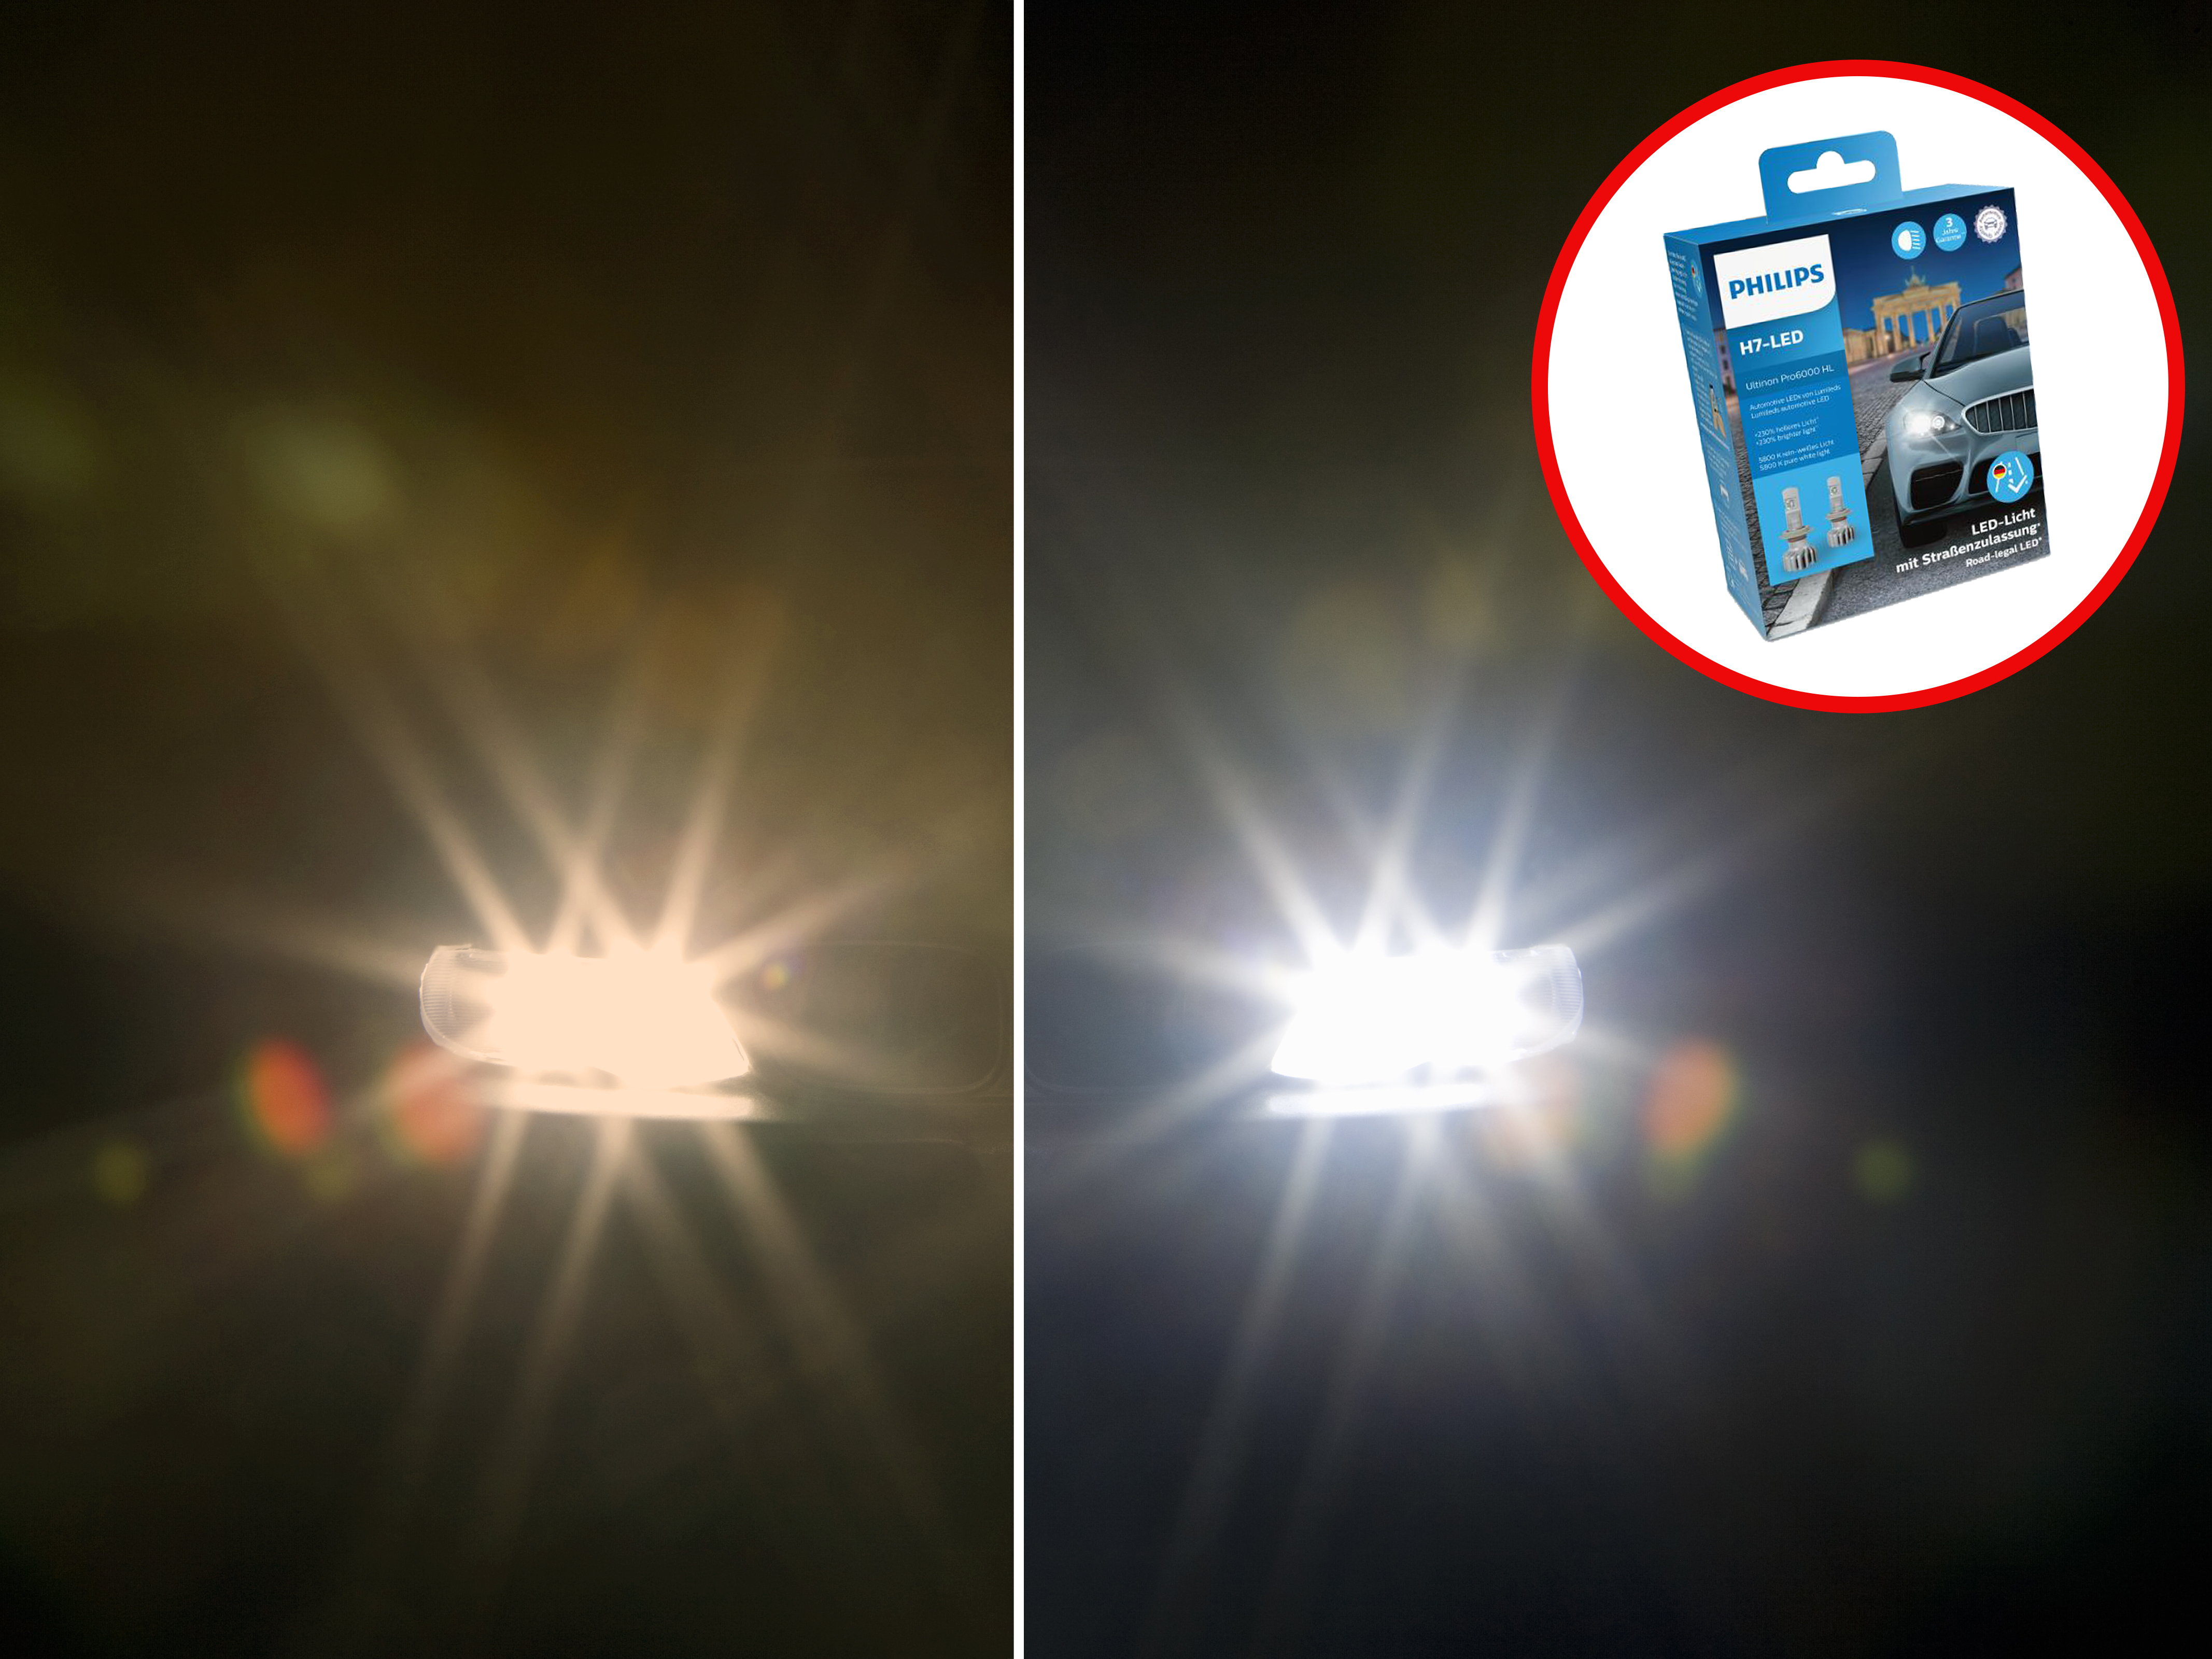 Philips H7-LED zum Nachrüsten mit Straßenzulassung - AUTO BILD